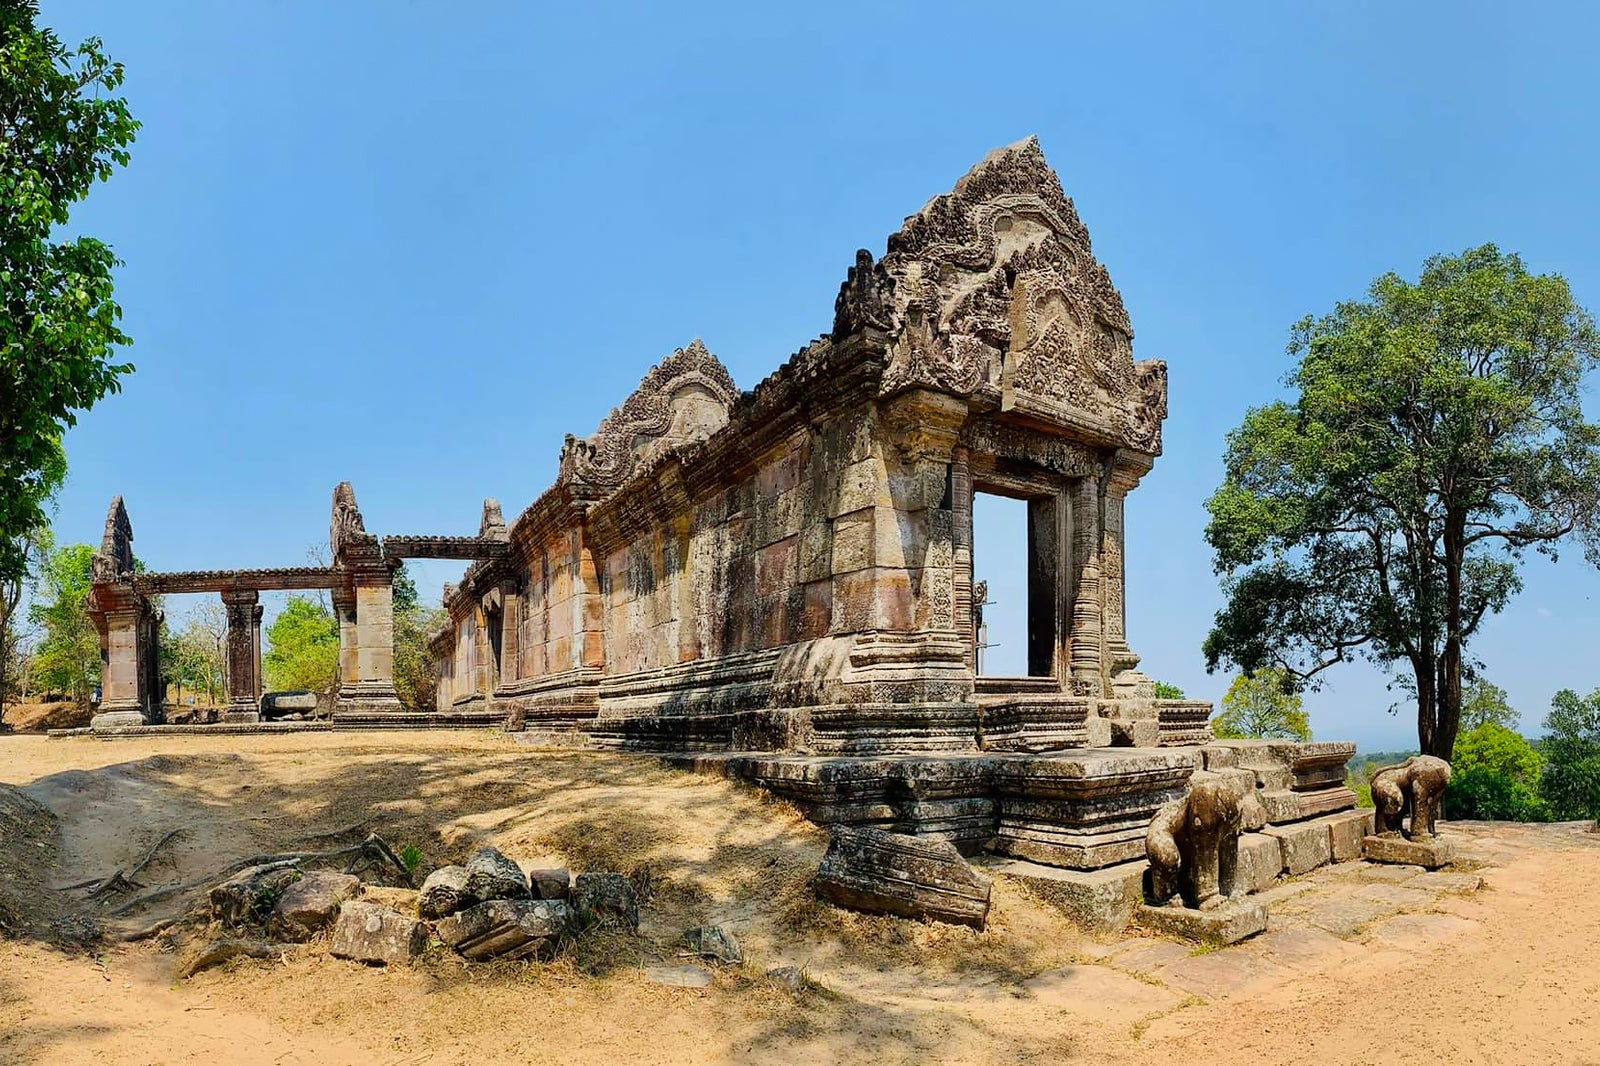 Preah vihear Temple, Cambodia